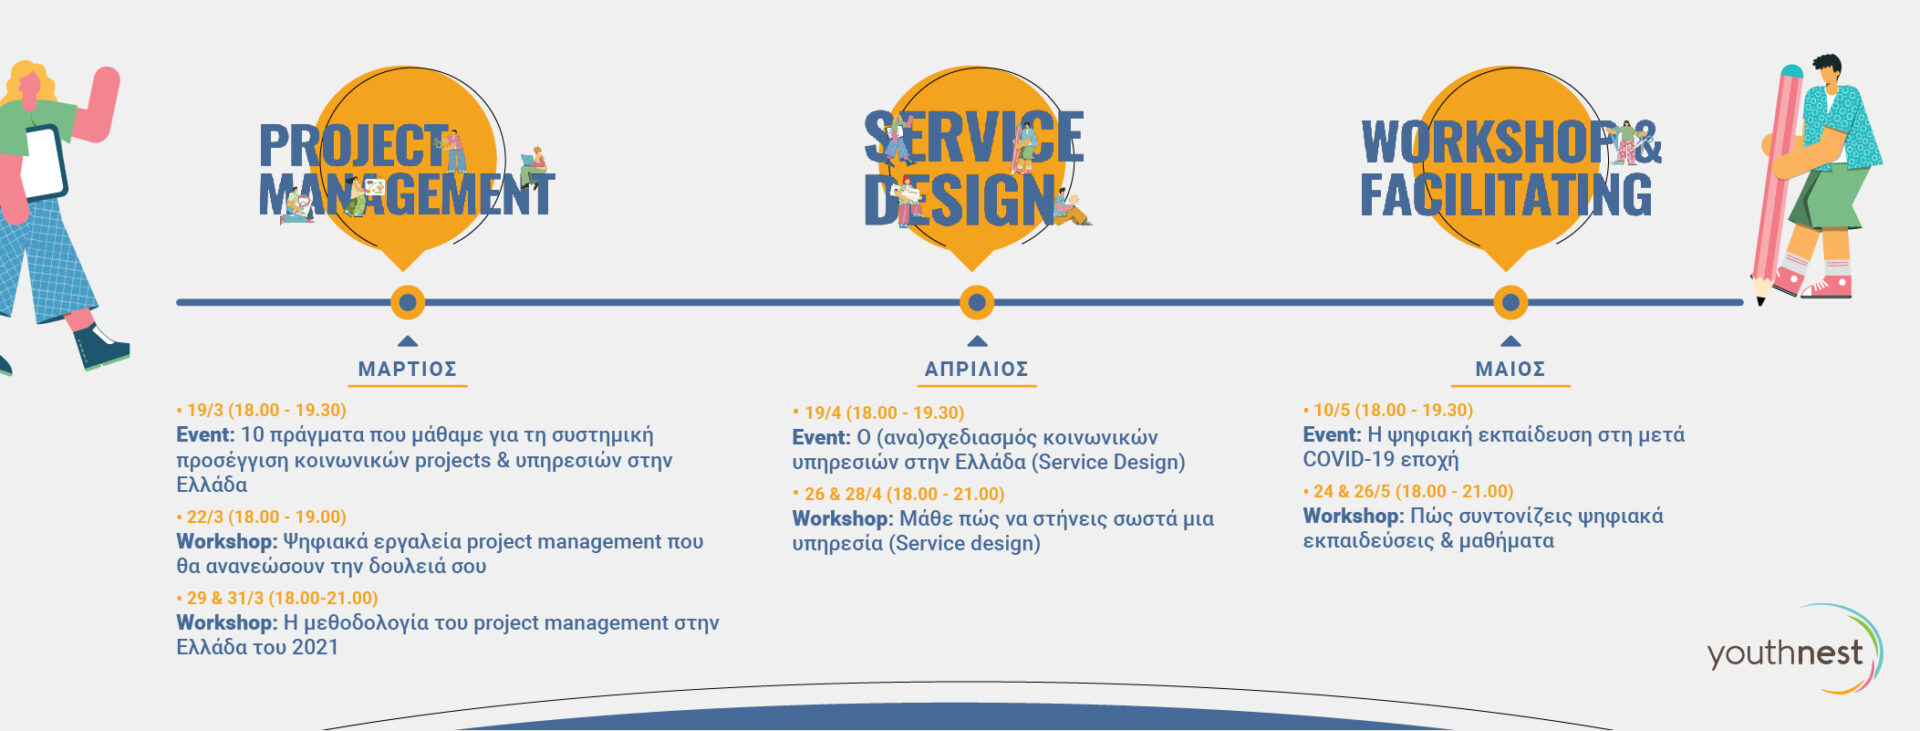 5 χρόνια project management & service design στην Ελλάδα_F-03